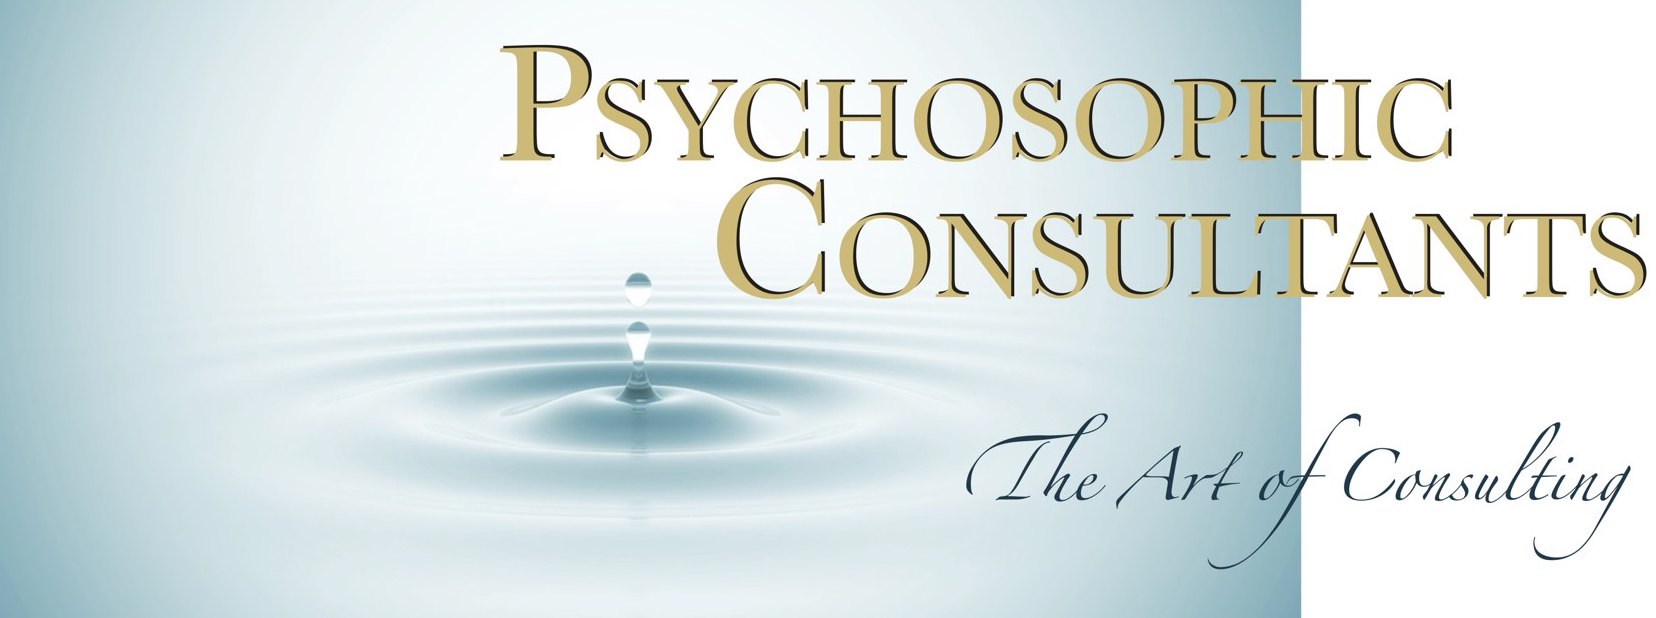 Holographisches Denken - Mentales Werkzeug der Zukunft - Psychosophic Consultants